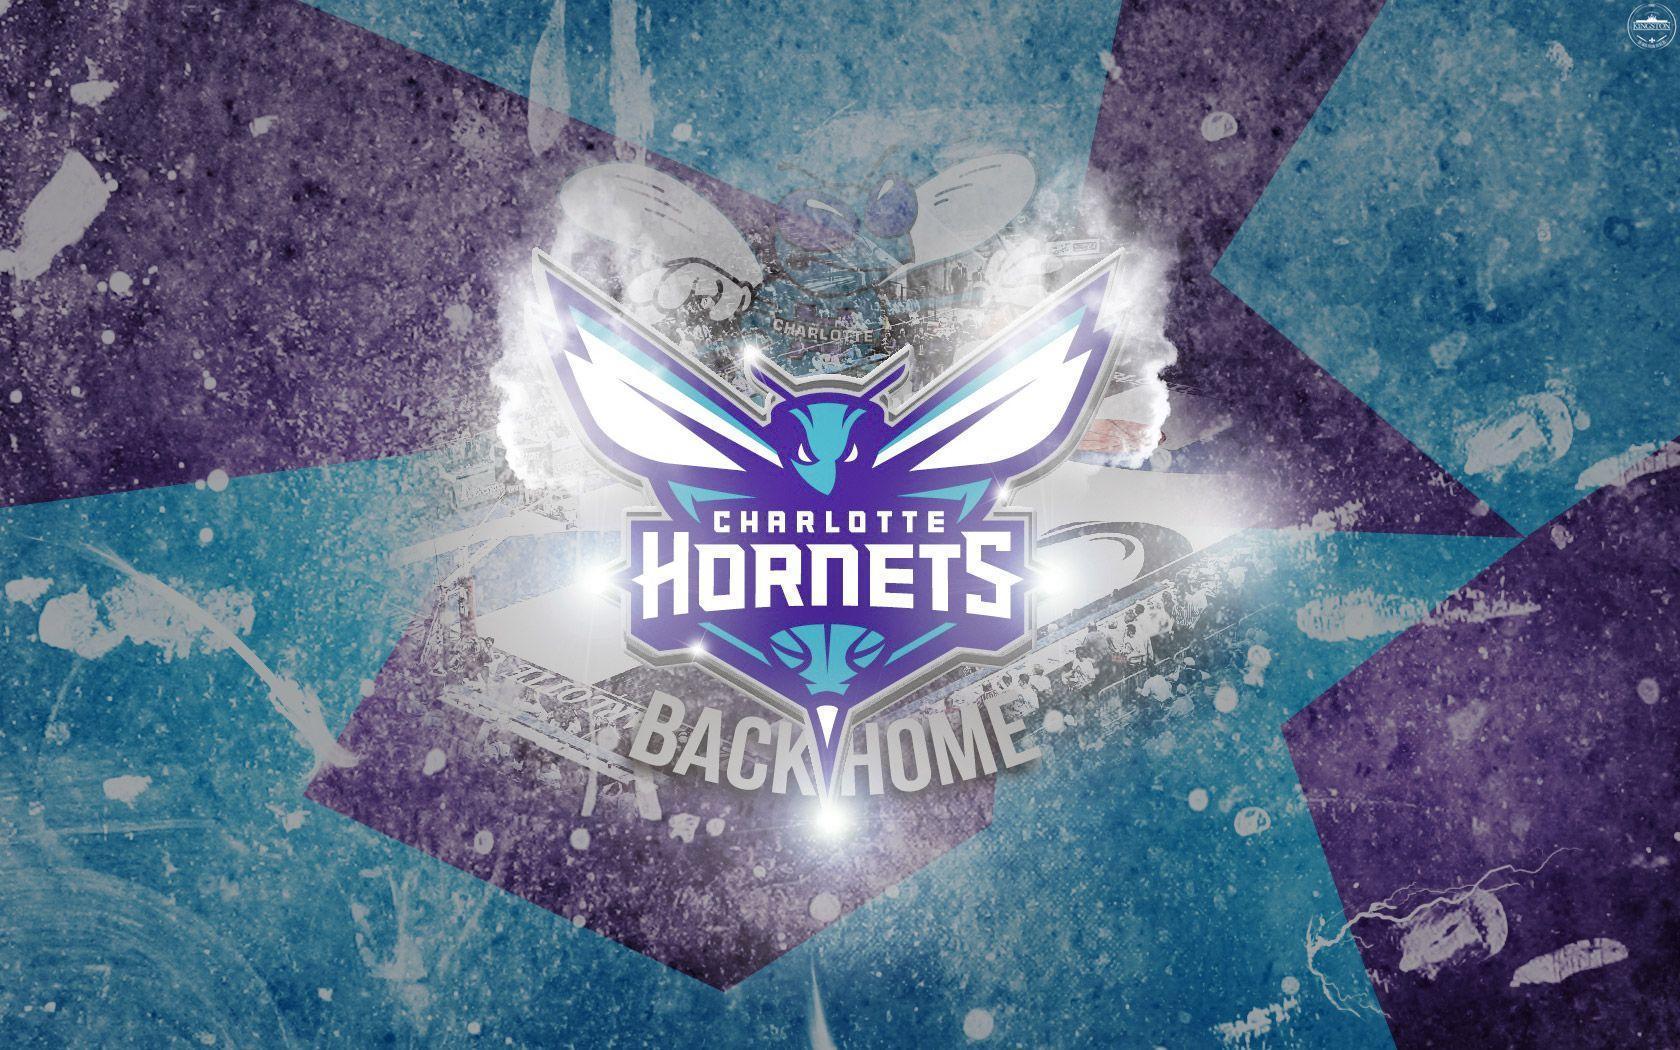 Charlotte Hornets Wallpaper. Basketball Wallpaper at